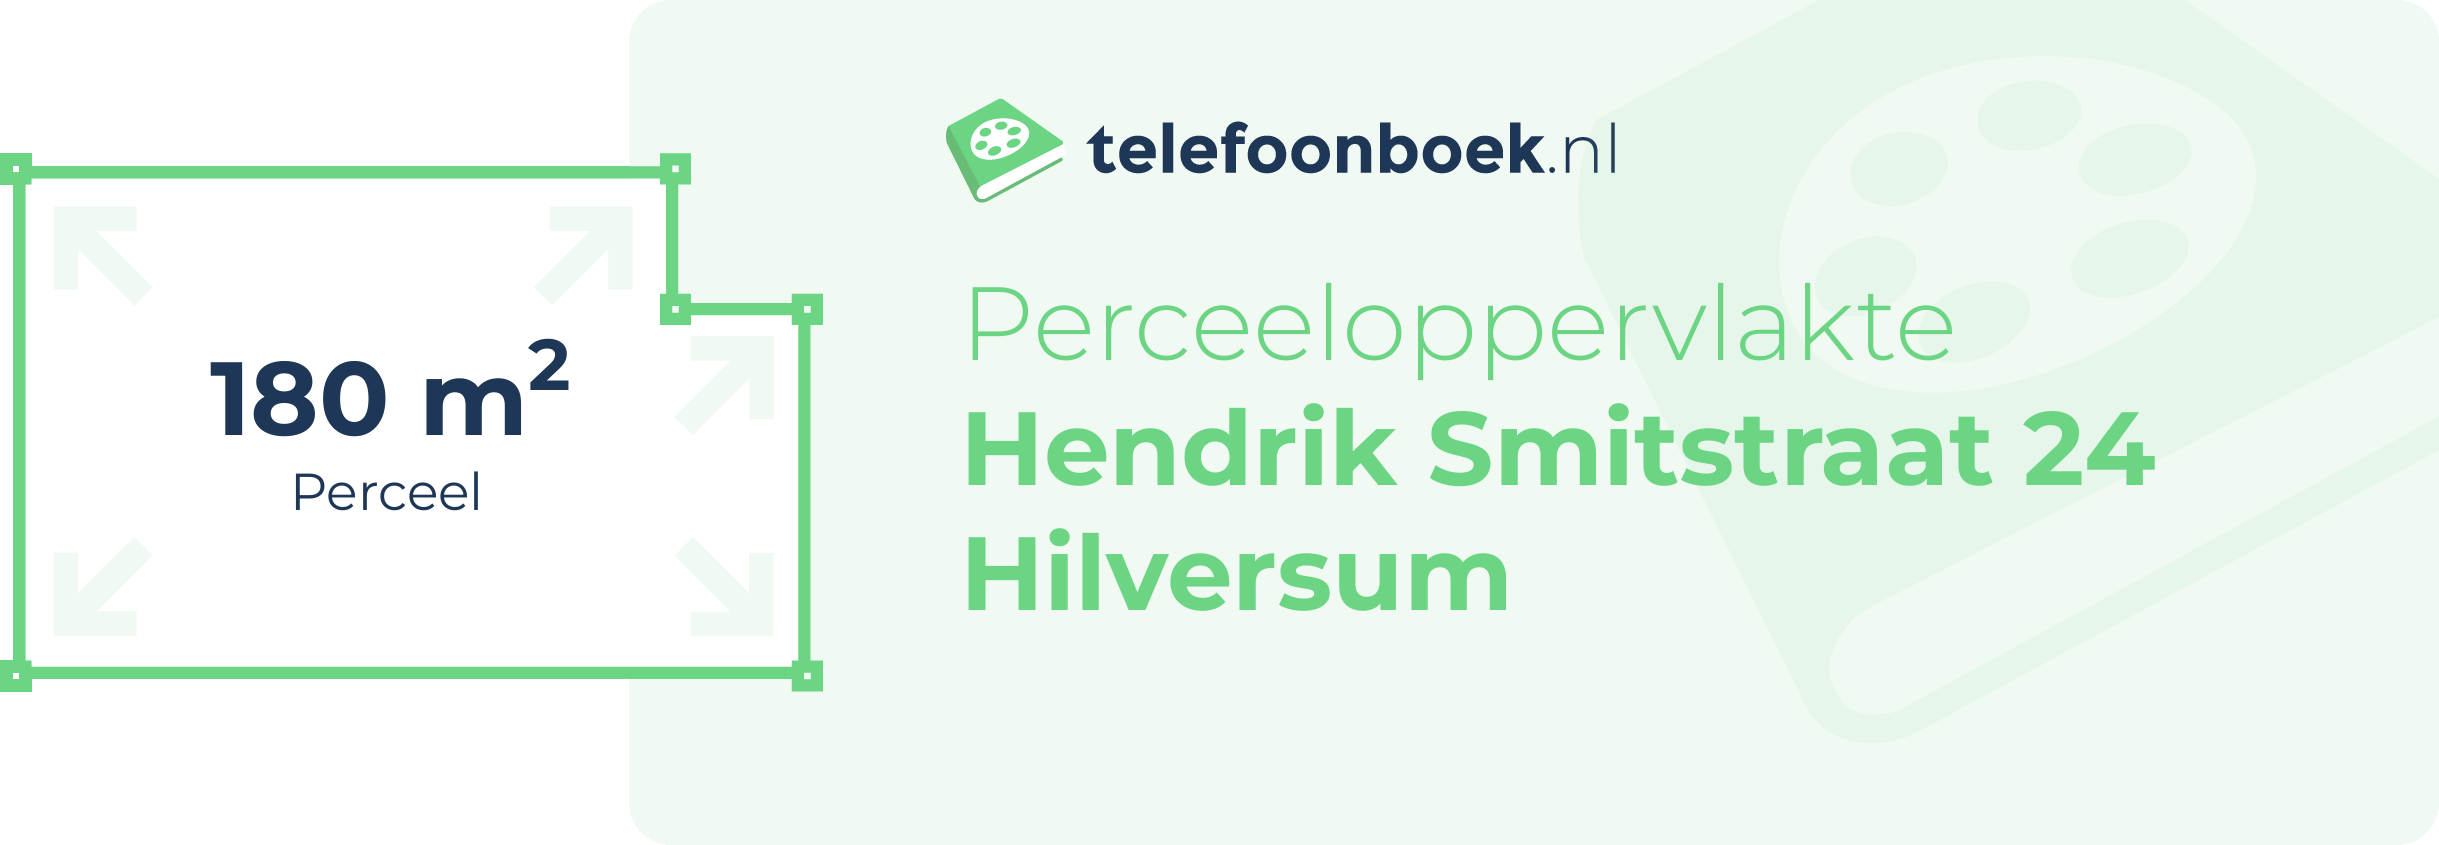 Perceeloppervlakte Hendrik Smitstraat 24 Hilversum